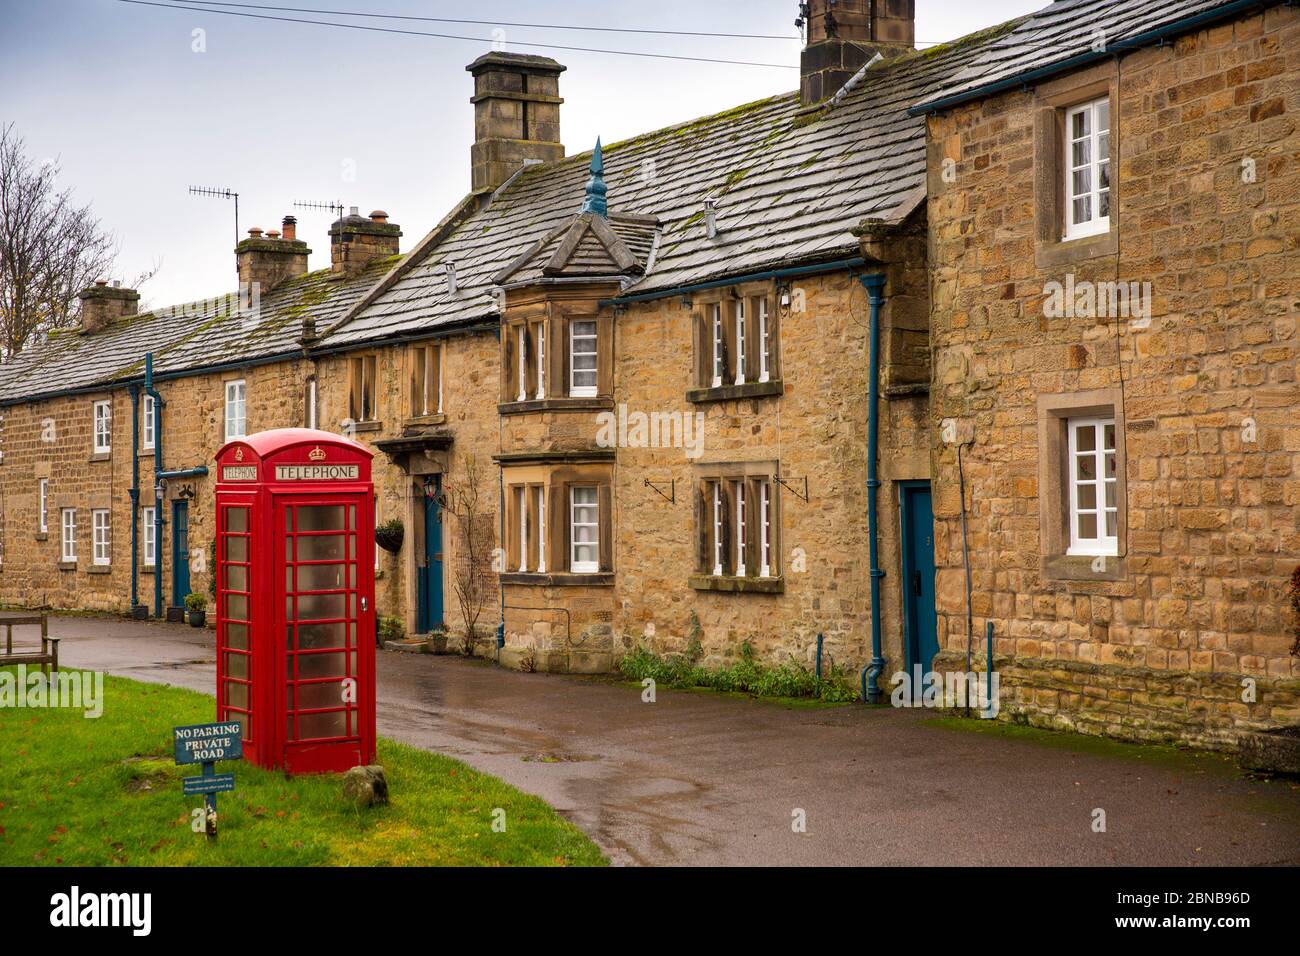 Regno Unito, Inghilterra, Derbyshire, Pilsley, vecchia scatola telefonica K6 fuori Chatsworth Estate villaggio case in pietra Foto Stock